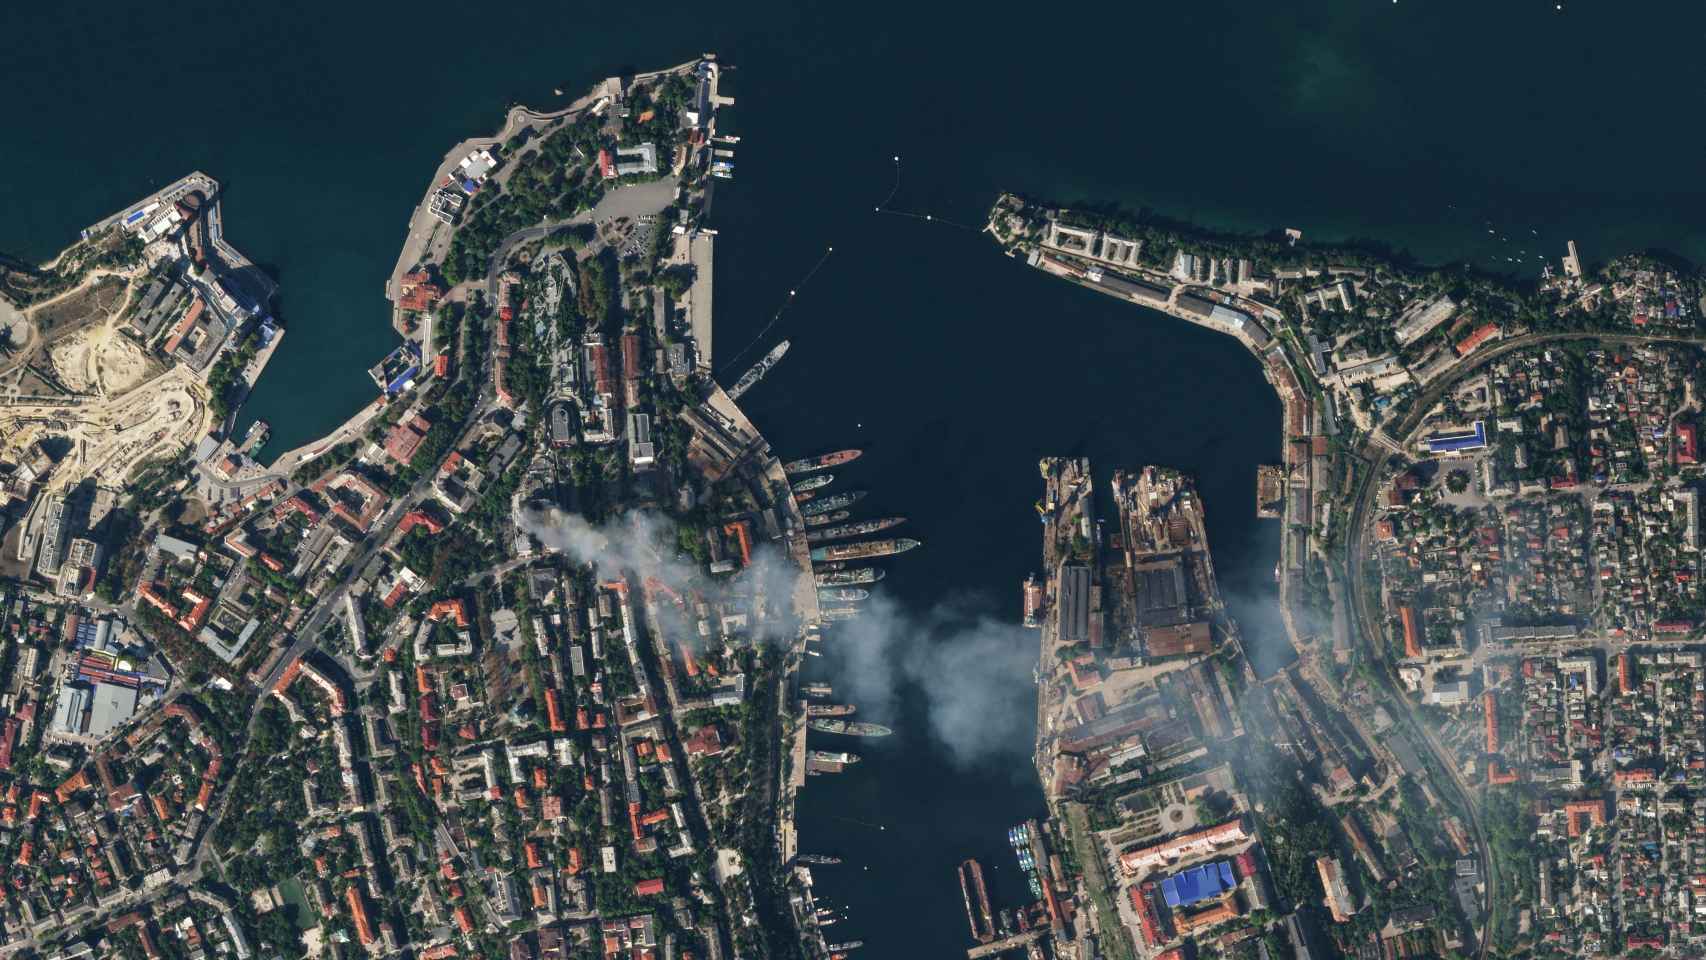 Imagen satélite muestra humo saliendo de un cuartel general de la Armada rusa del Mar Negro después de un ataque con misiles.